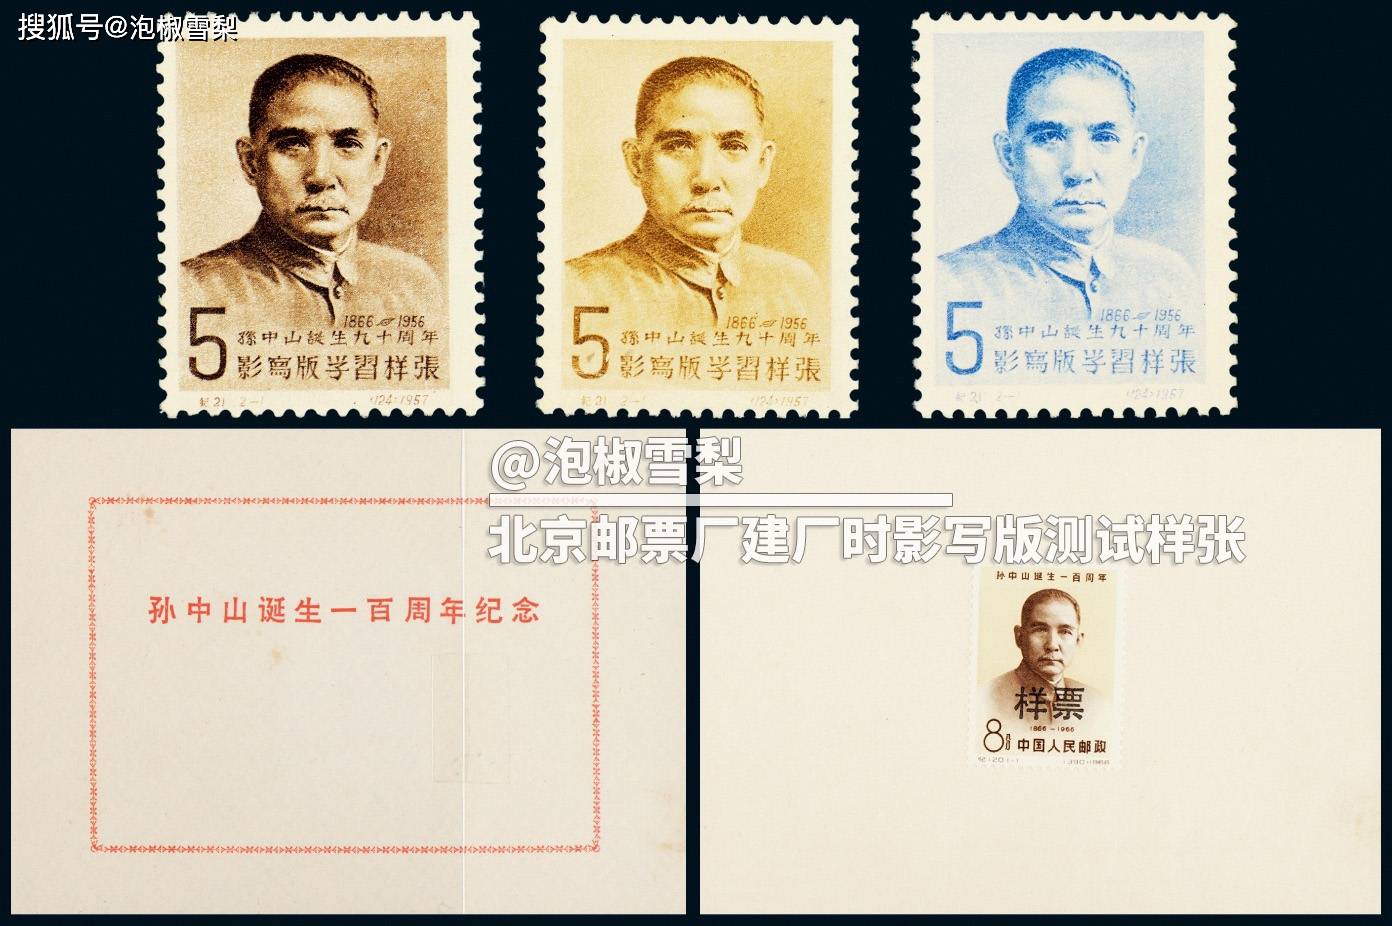 2023年邮票拍卖前十名,两款珍邮首次出现,比一片红还贵